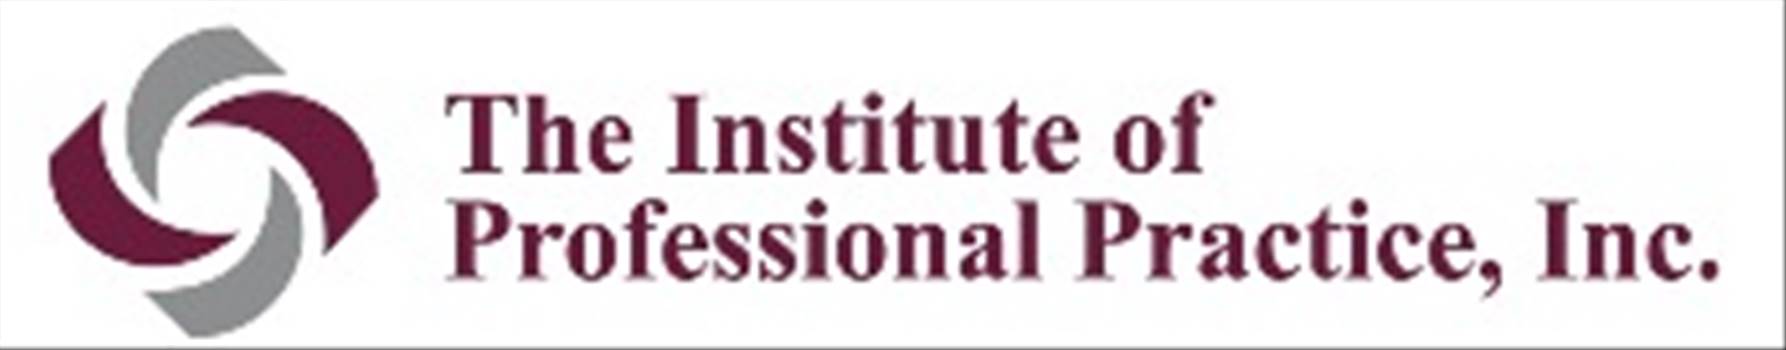 IPPI Logo (tiny logo).jpg by Joyful